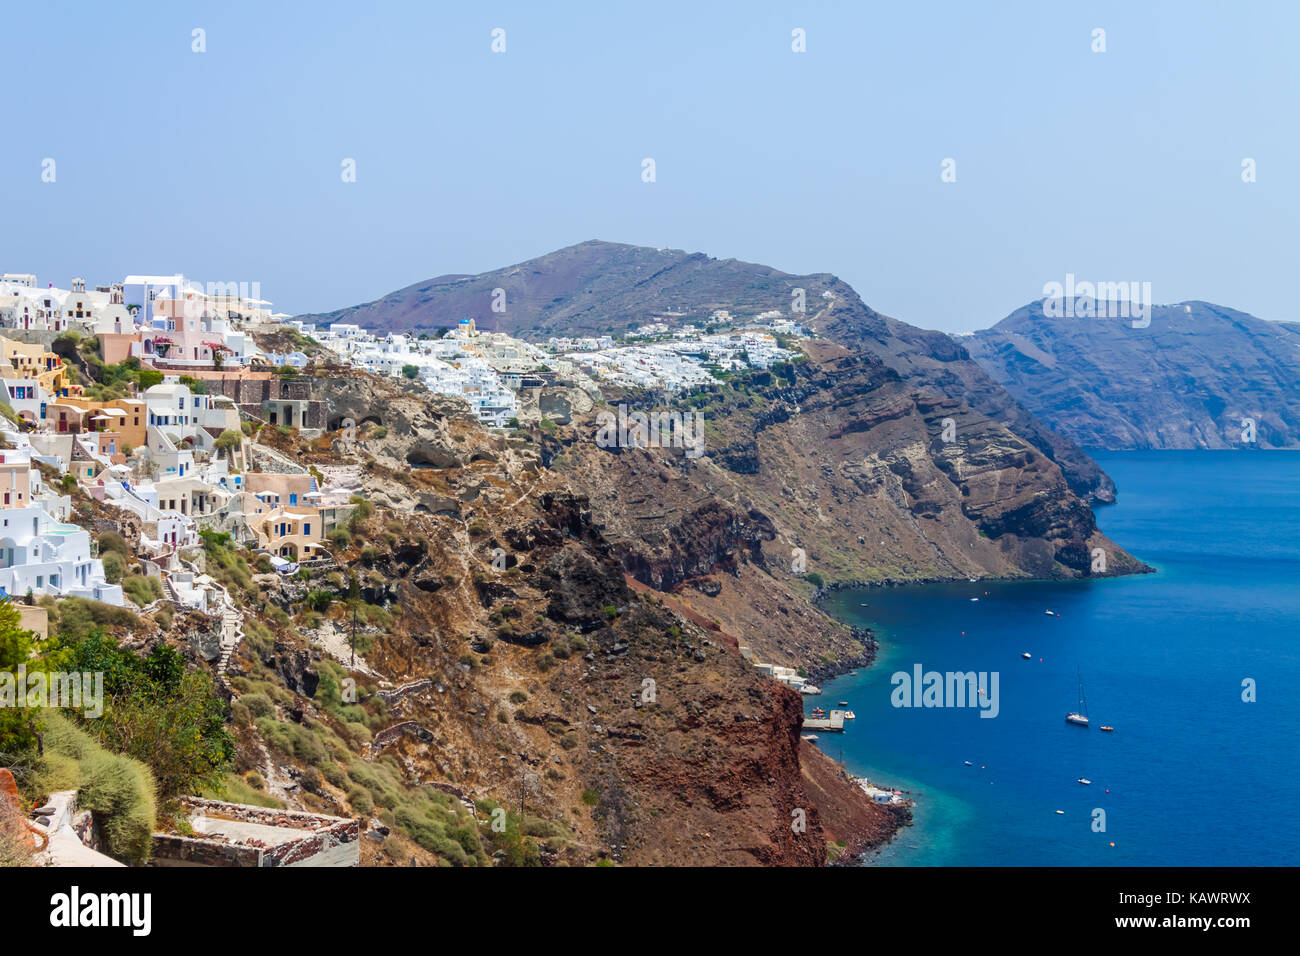 Vista panoramica della caldera di Santorini, villaggio di Oia, le montagne e il mare. Santorini Island, Grecia Foto Stock